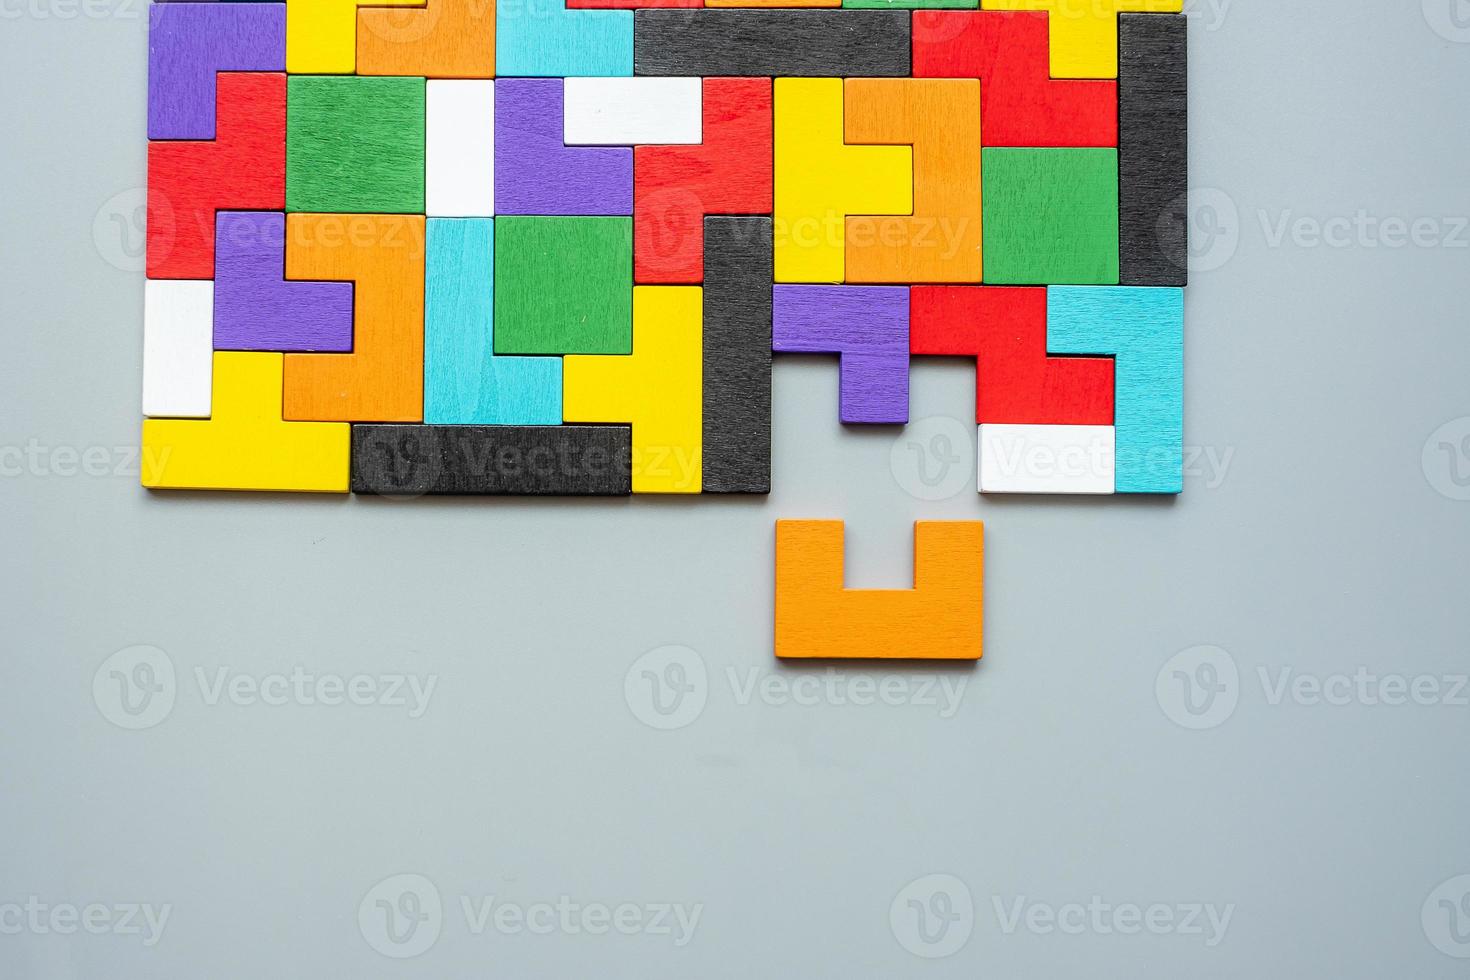 geometrisk form block med färgglada trä pusselbit bakgrund. logiskt tänkande, affärslogik, gåta, beslut, lösningar, rationellt, uppdrag, framgång, mål och strategikoncept foto